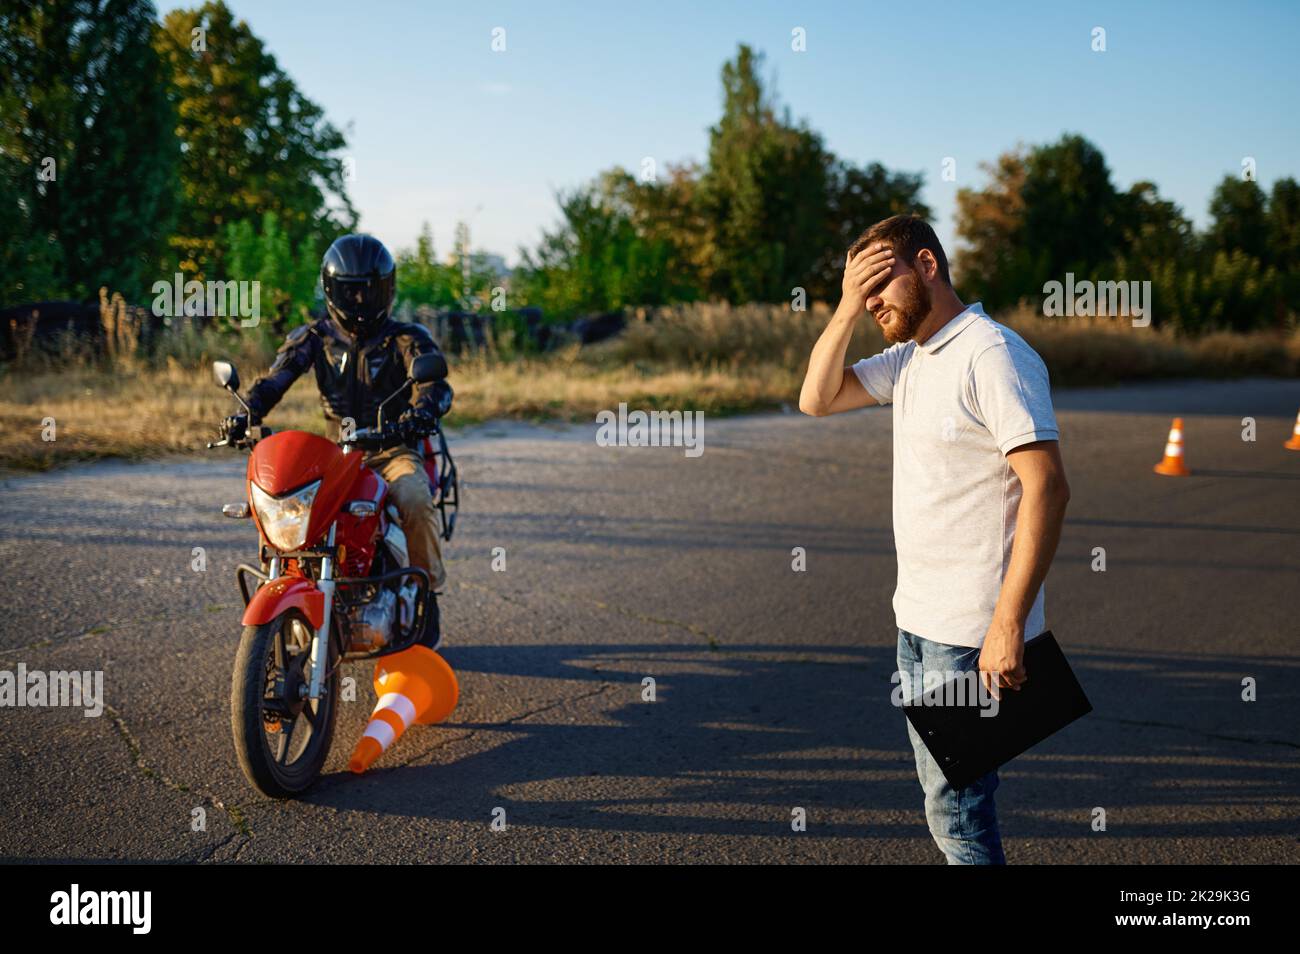 Un étudiant en moto a couru sur un cône Banque D'Images